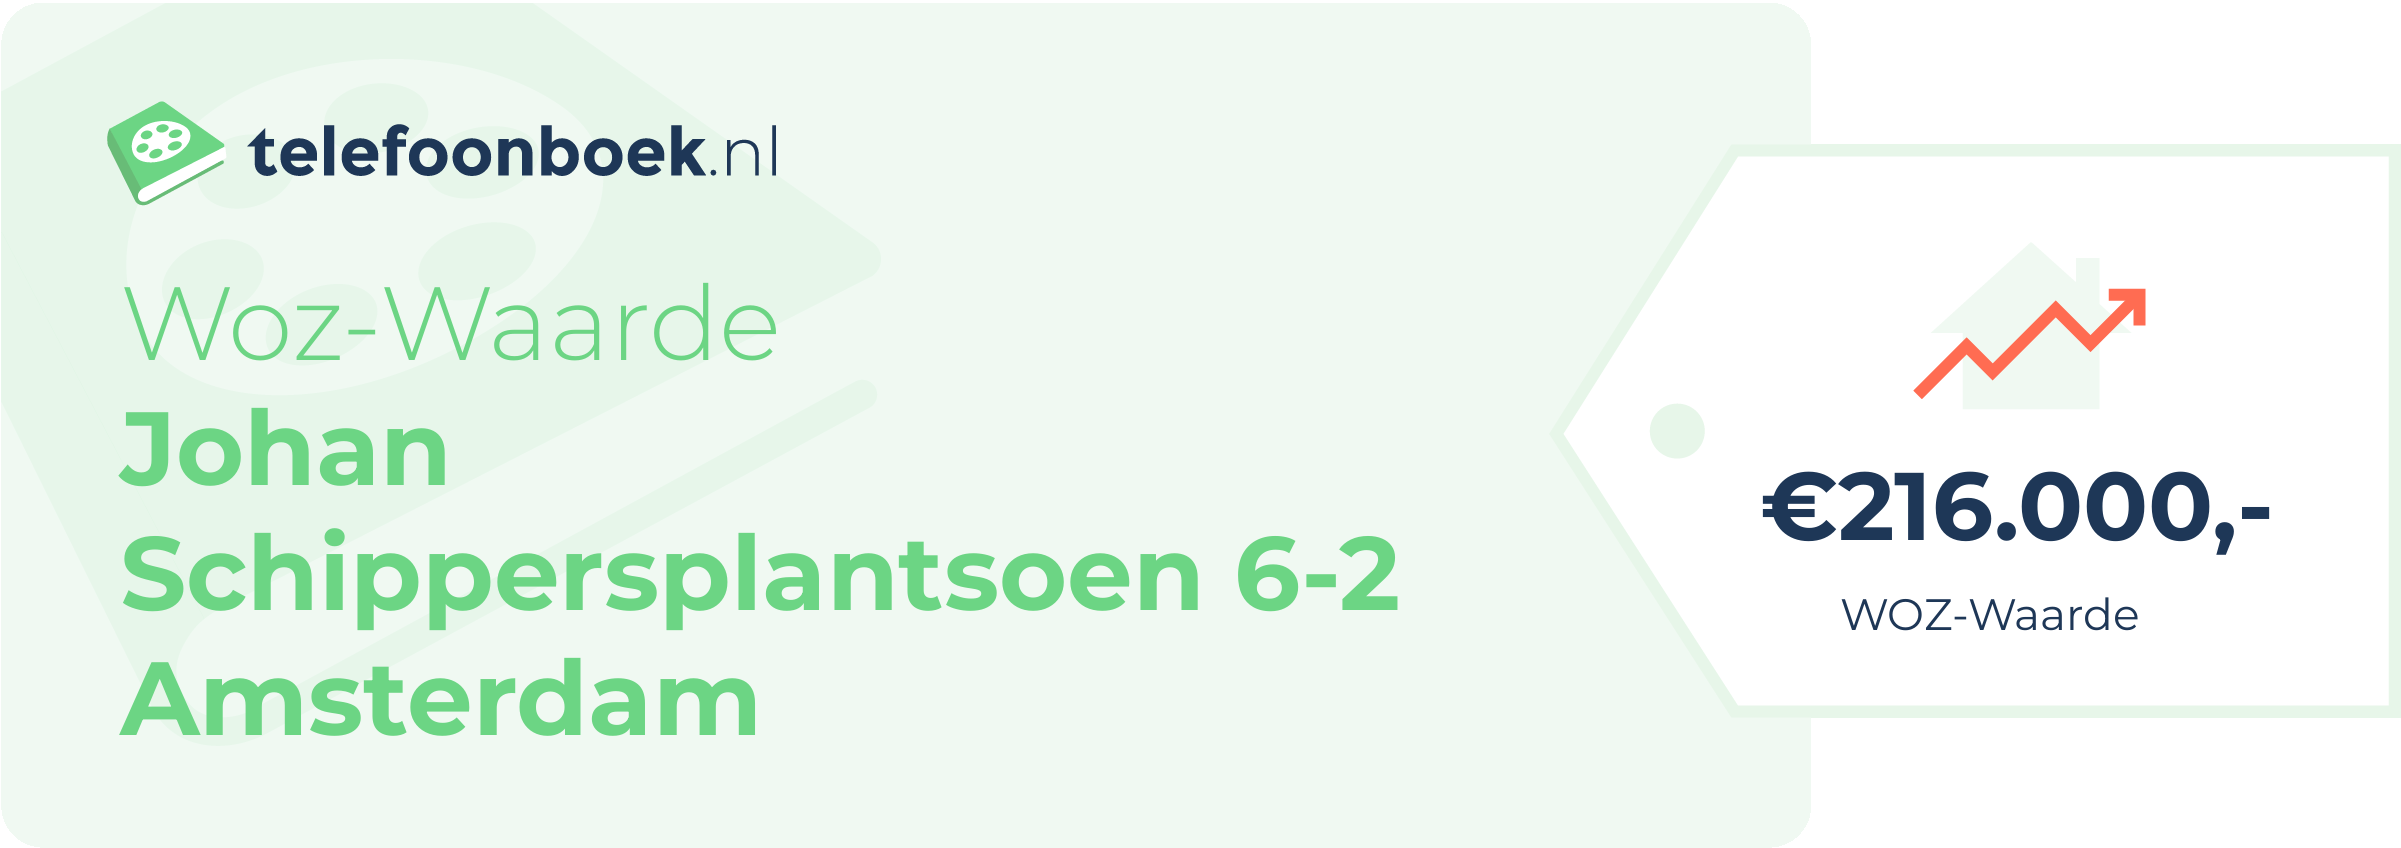 WOZ-waarde Johan Schippersplantsoen 6-2 Amsterdam